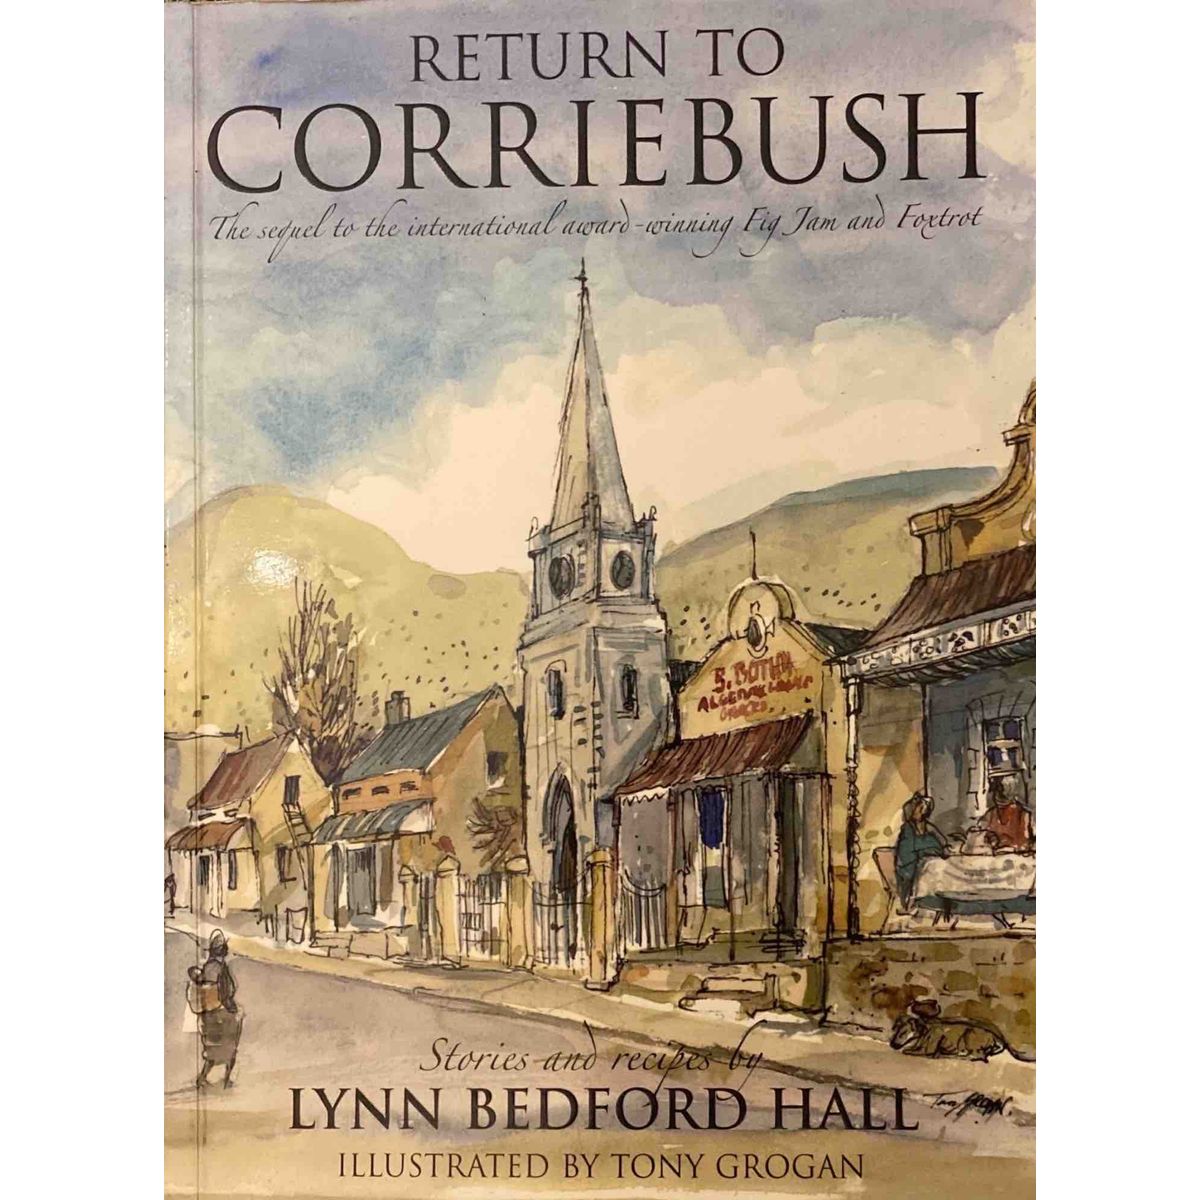 ISBN: 9781770072121 / 1770072128 - Return To Corriebush by Lynn Bedford Hall, illustrated by Tony Grogan [2005]